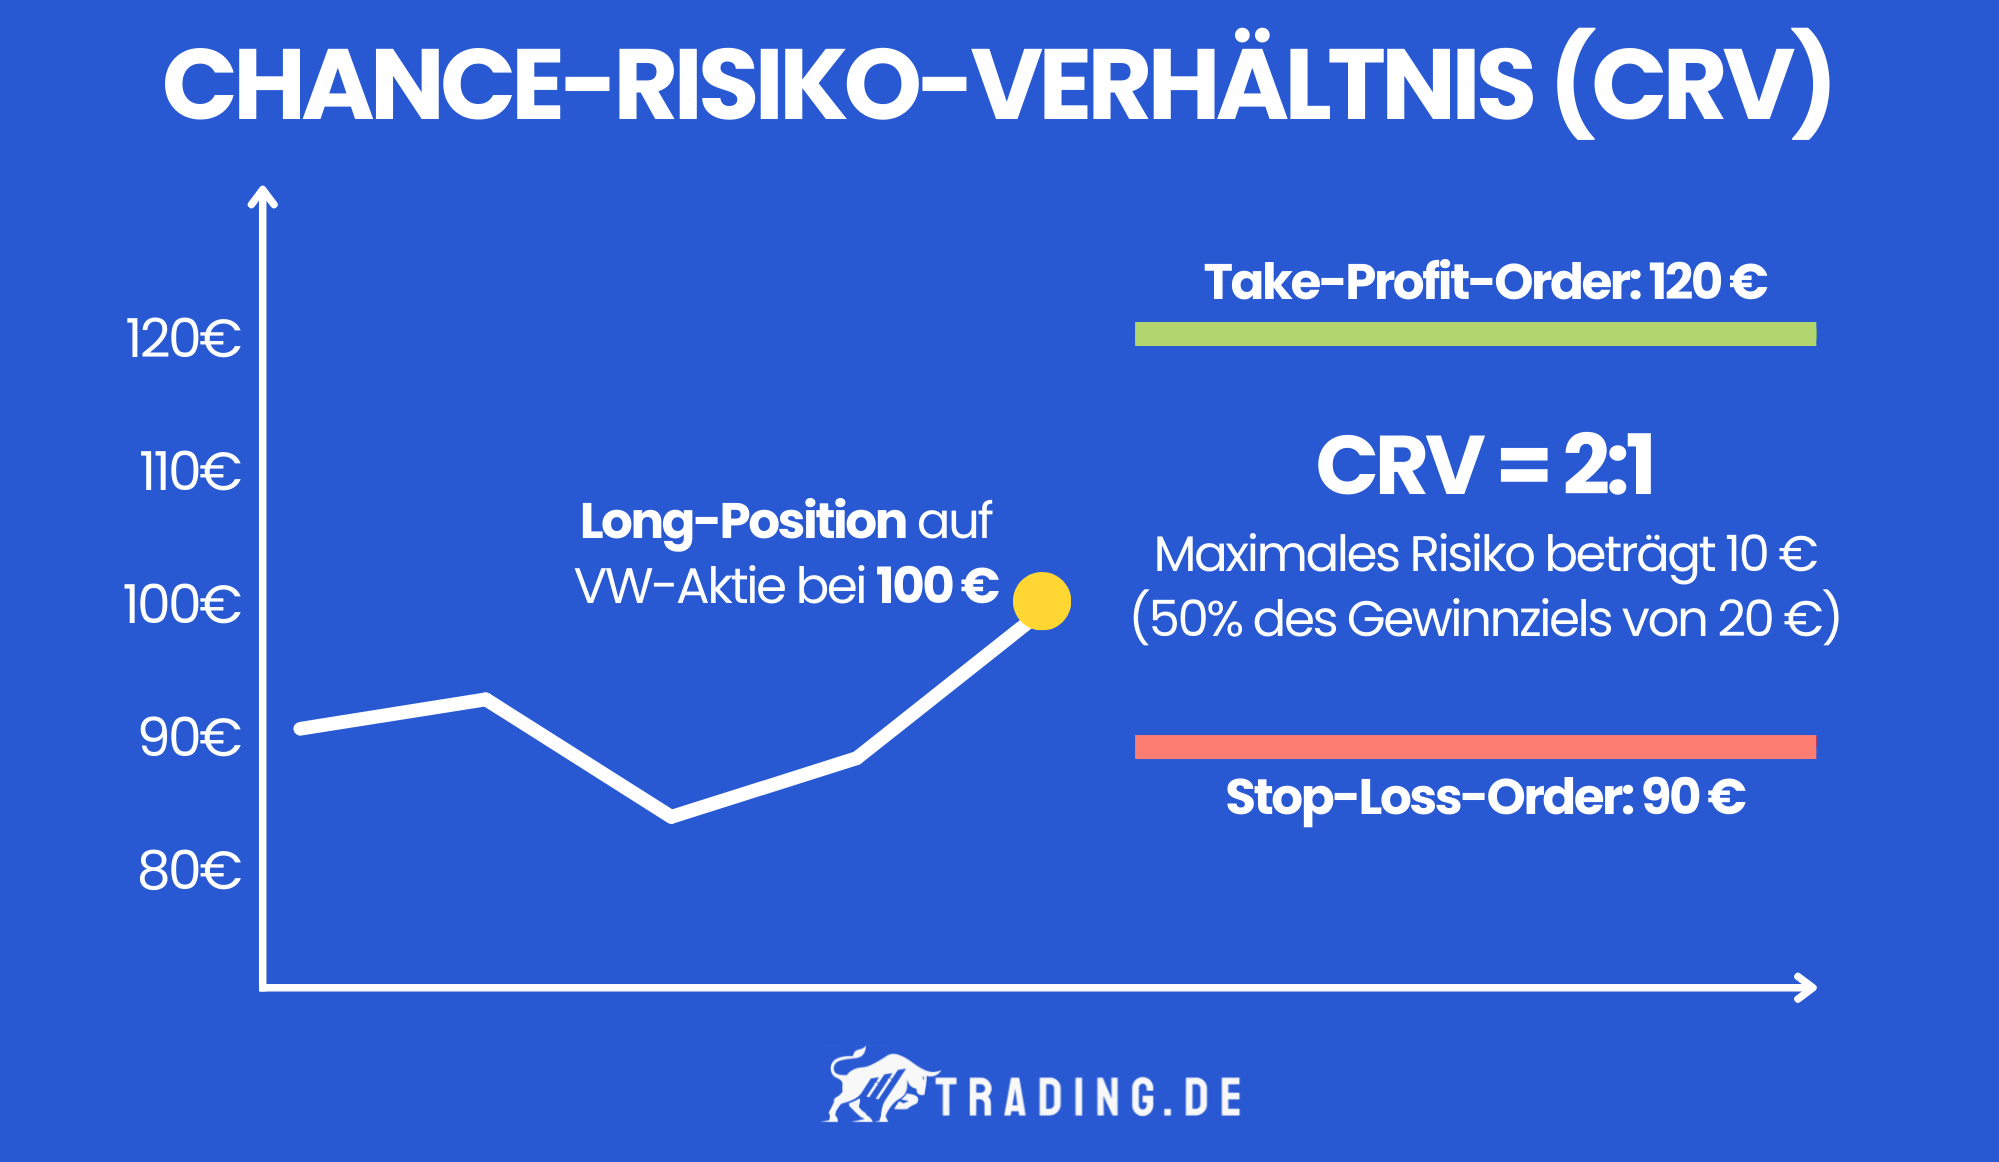 Chance-Risiko-Verhältnis (CRV) von 2:1 anhand einer Grafik erklärt. Long-Position auf VW-Aktie bei 100 €. Take-Profit-Order bei 120 € und Stop-Loss-Order bei 90 €. Maximales Risiko beträgt 10 €.